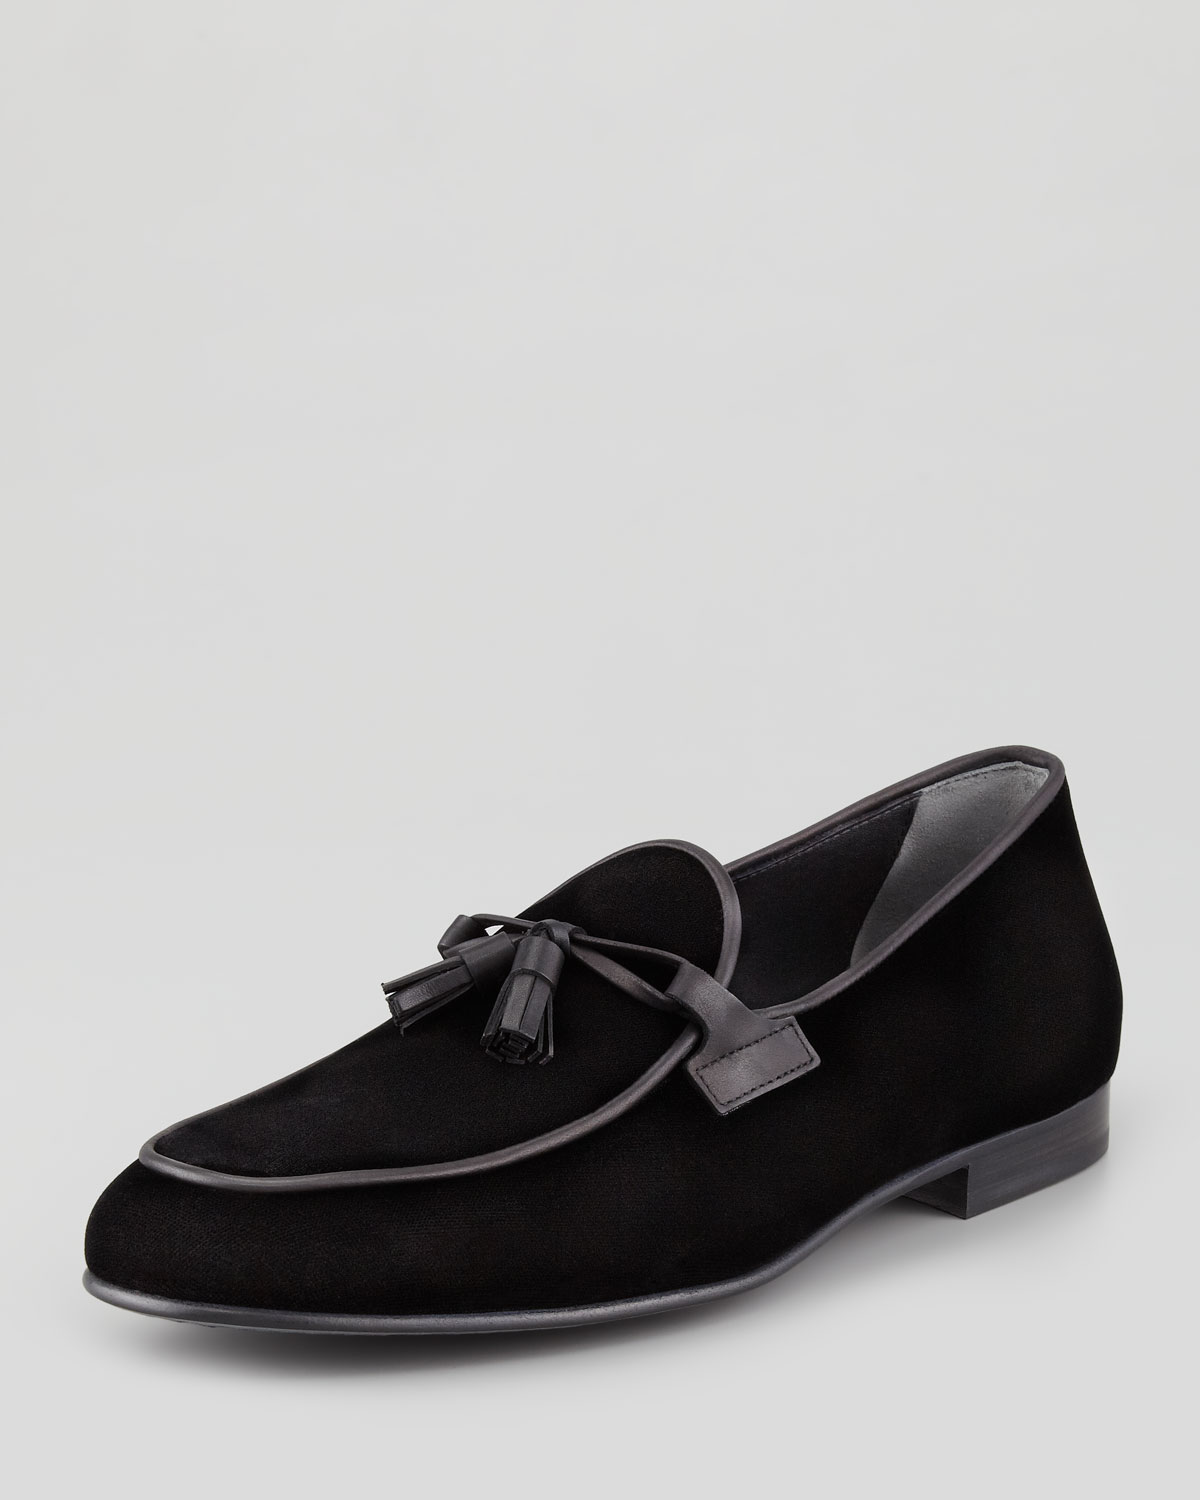 velvet loafers mens black